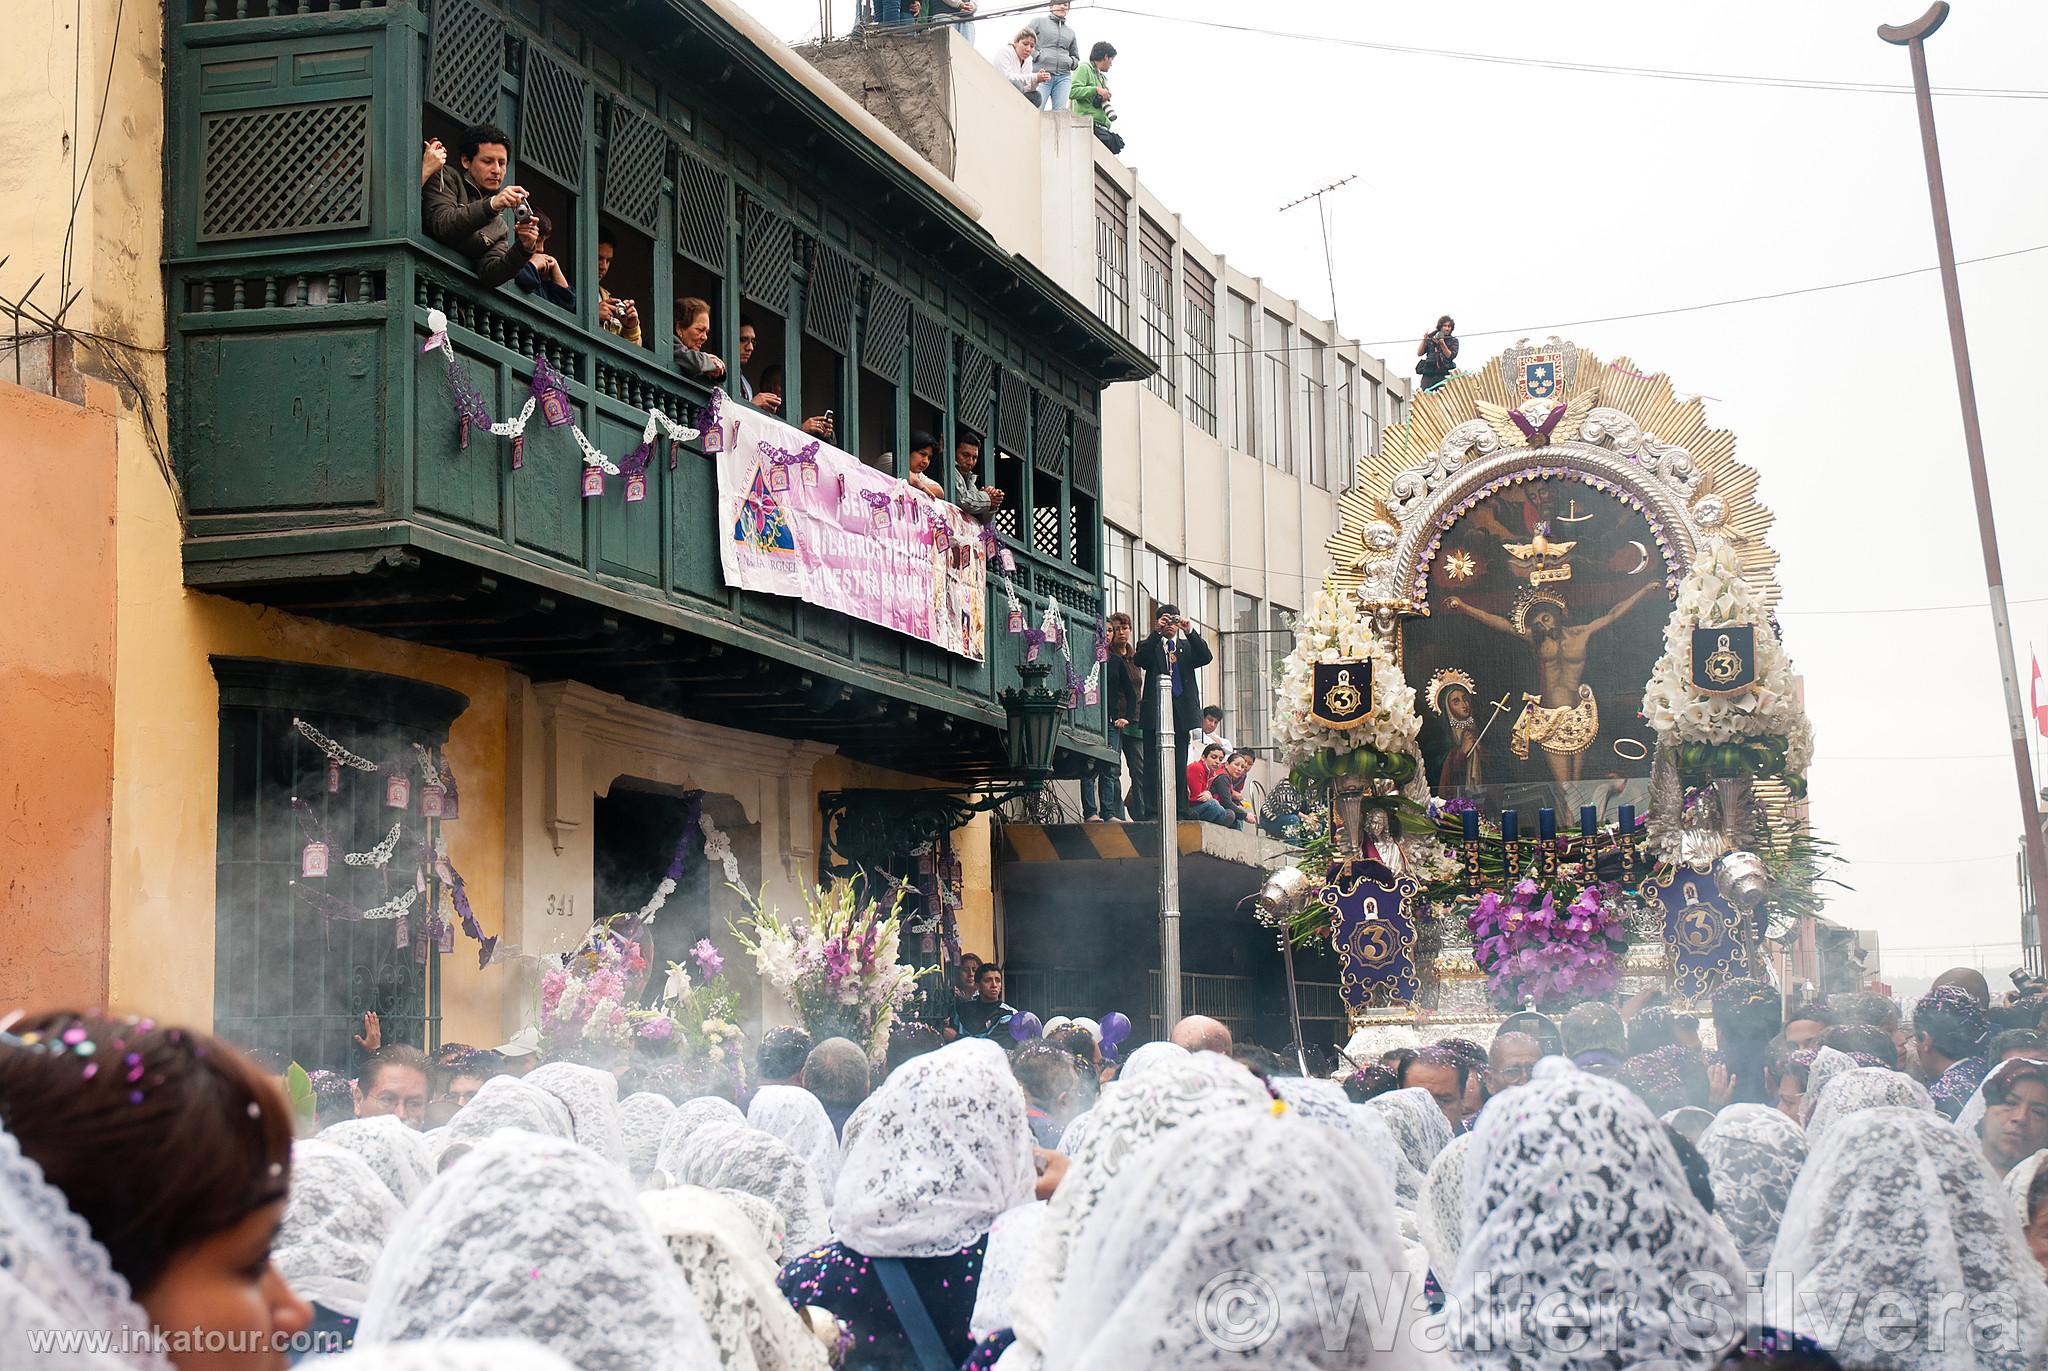 Procession of Seor de Los Milagros